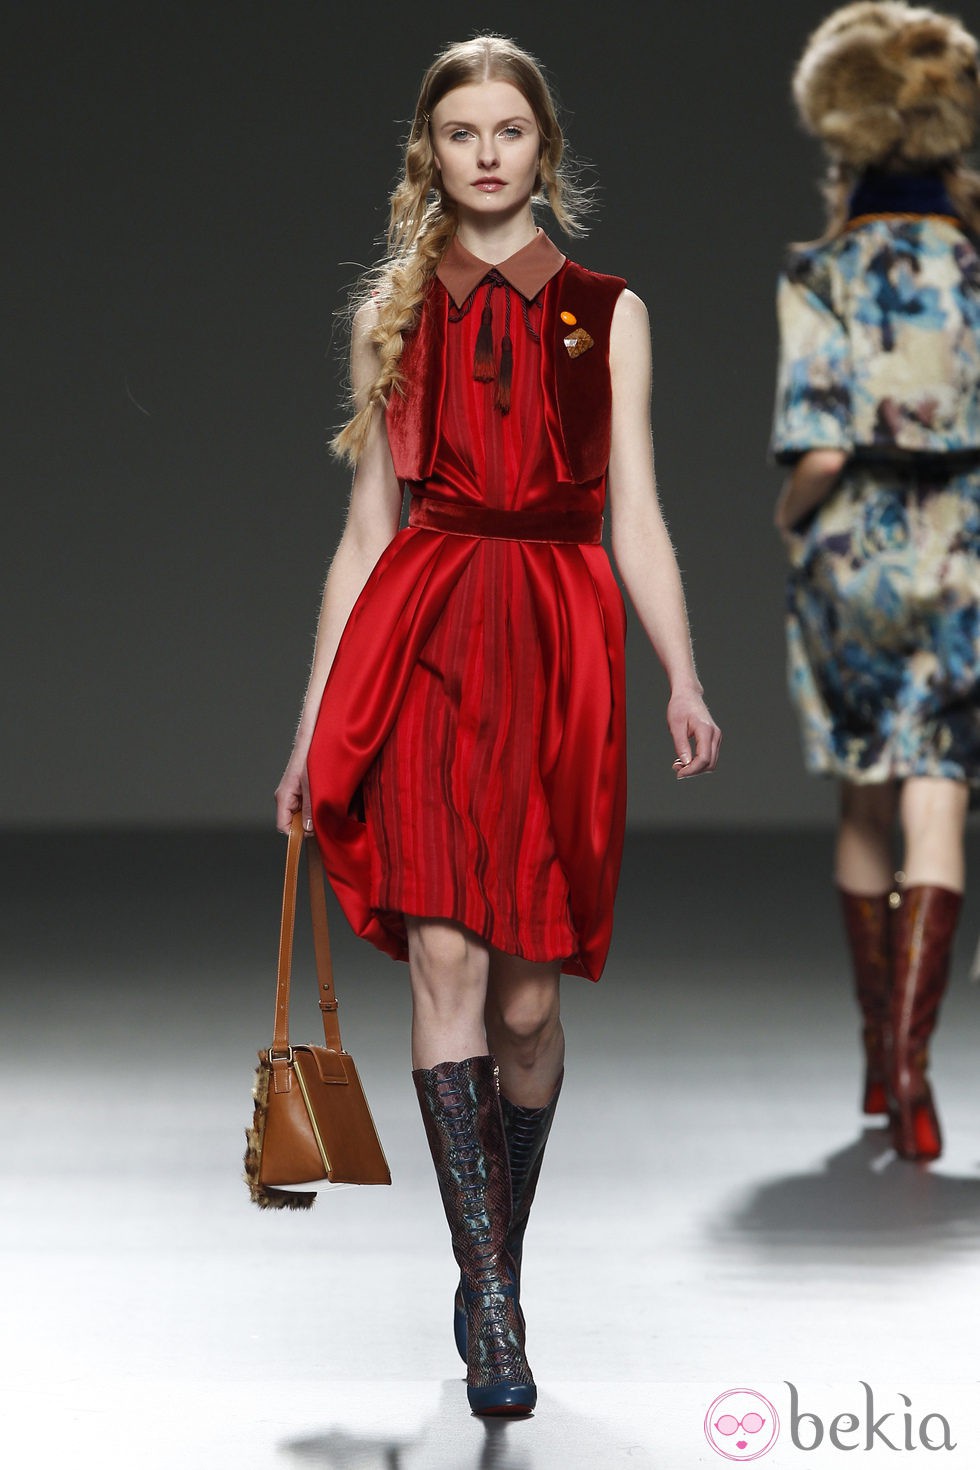 Vestido rojo de Victorio & Lucchino en Fashion Week Madrid